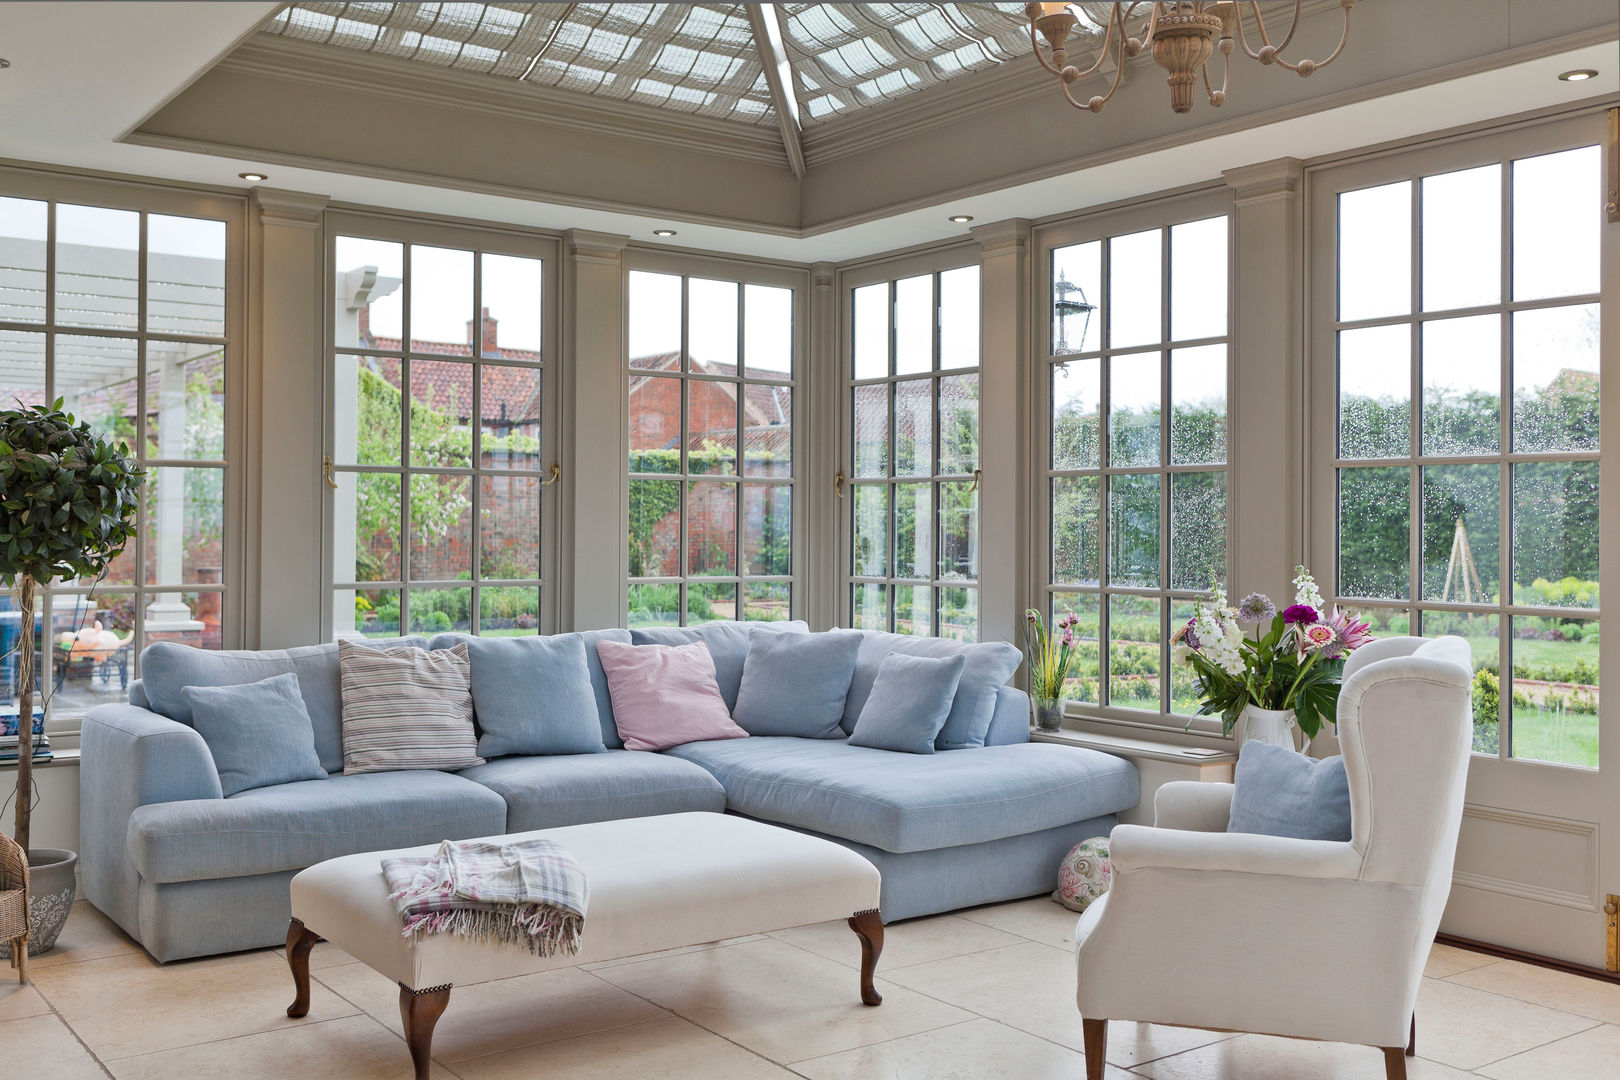 A Living Room Conservatory Vale Garden Houses Anexos de estilo clásico Madera Acabado en madera